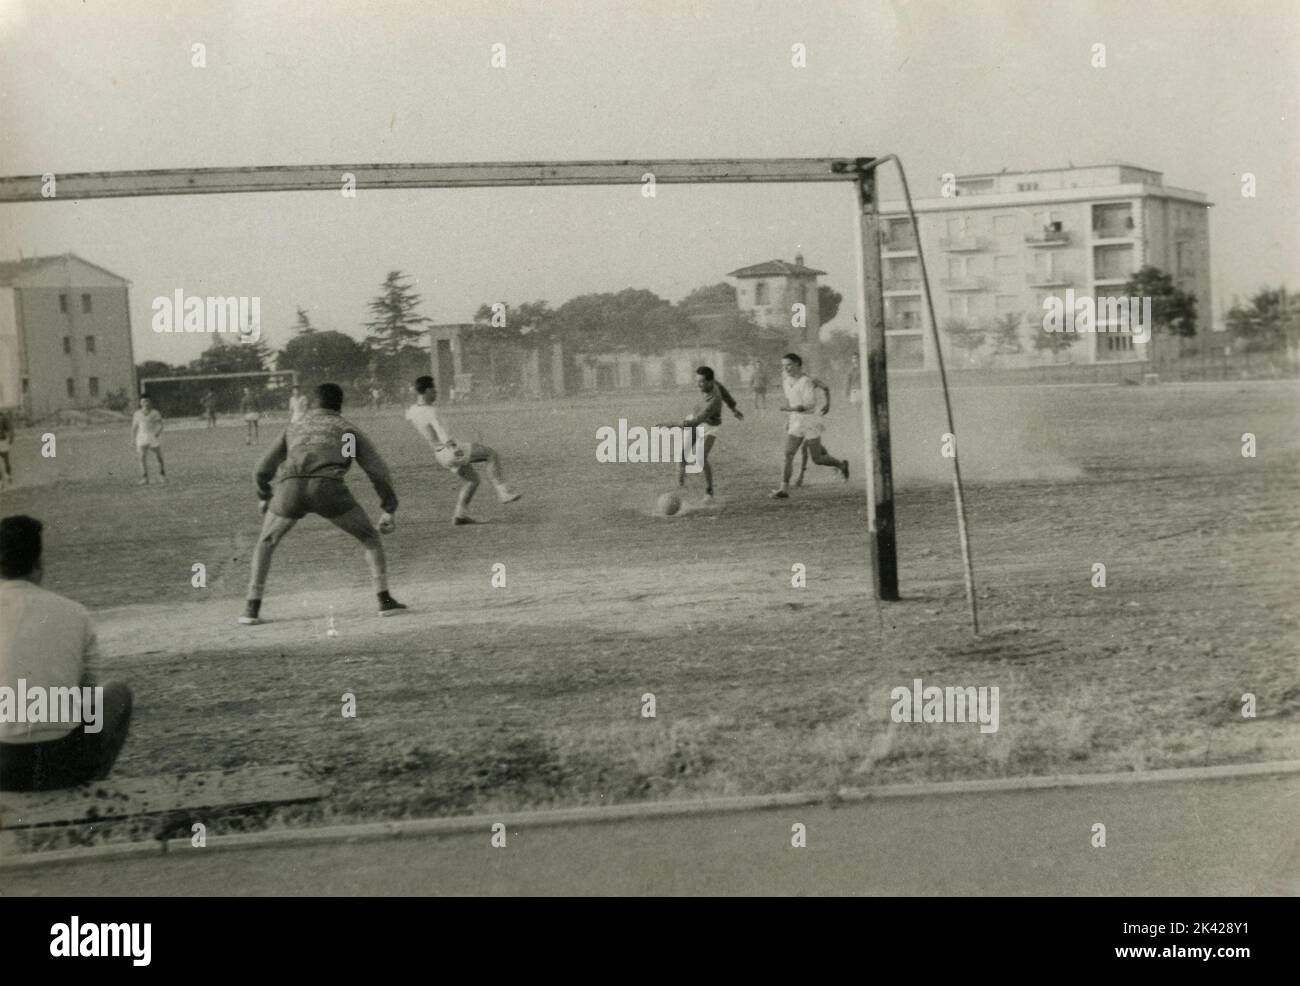 Amateurfußballspiel in einem staubigen Feld, Italien 1950s Stockfoto